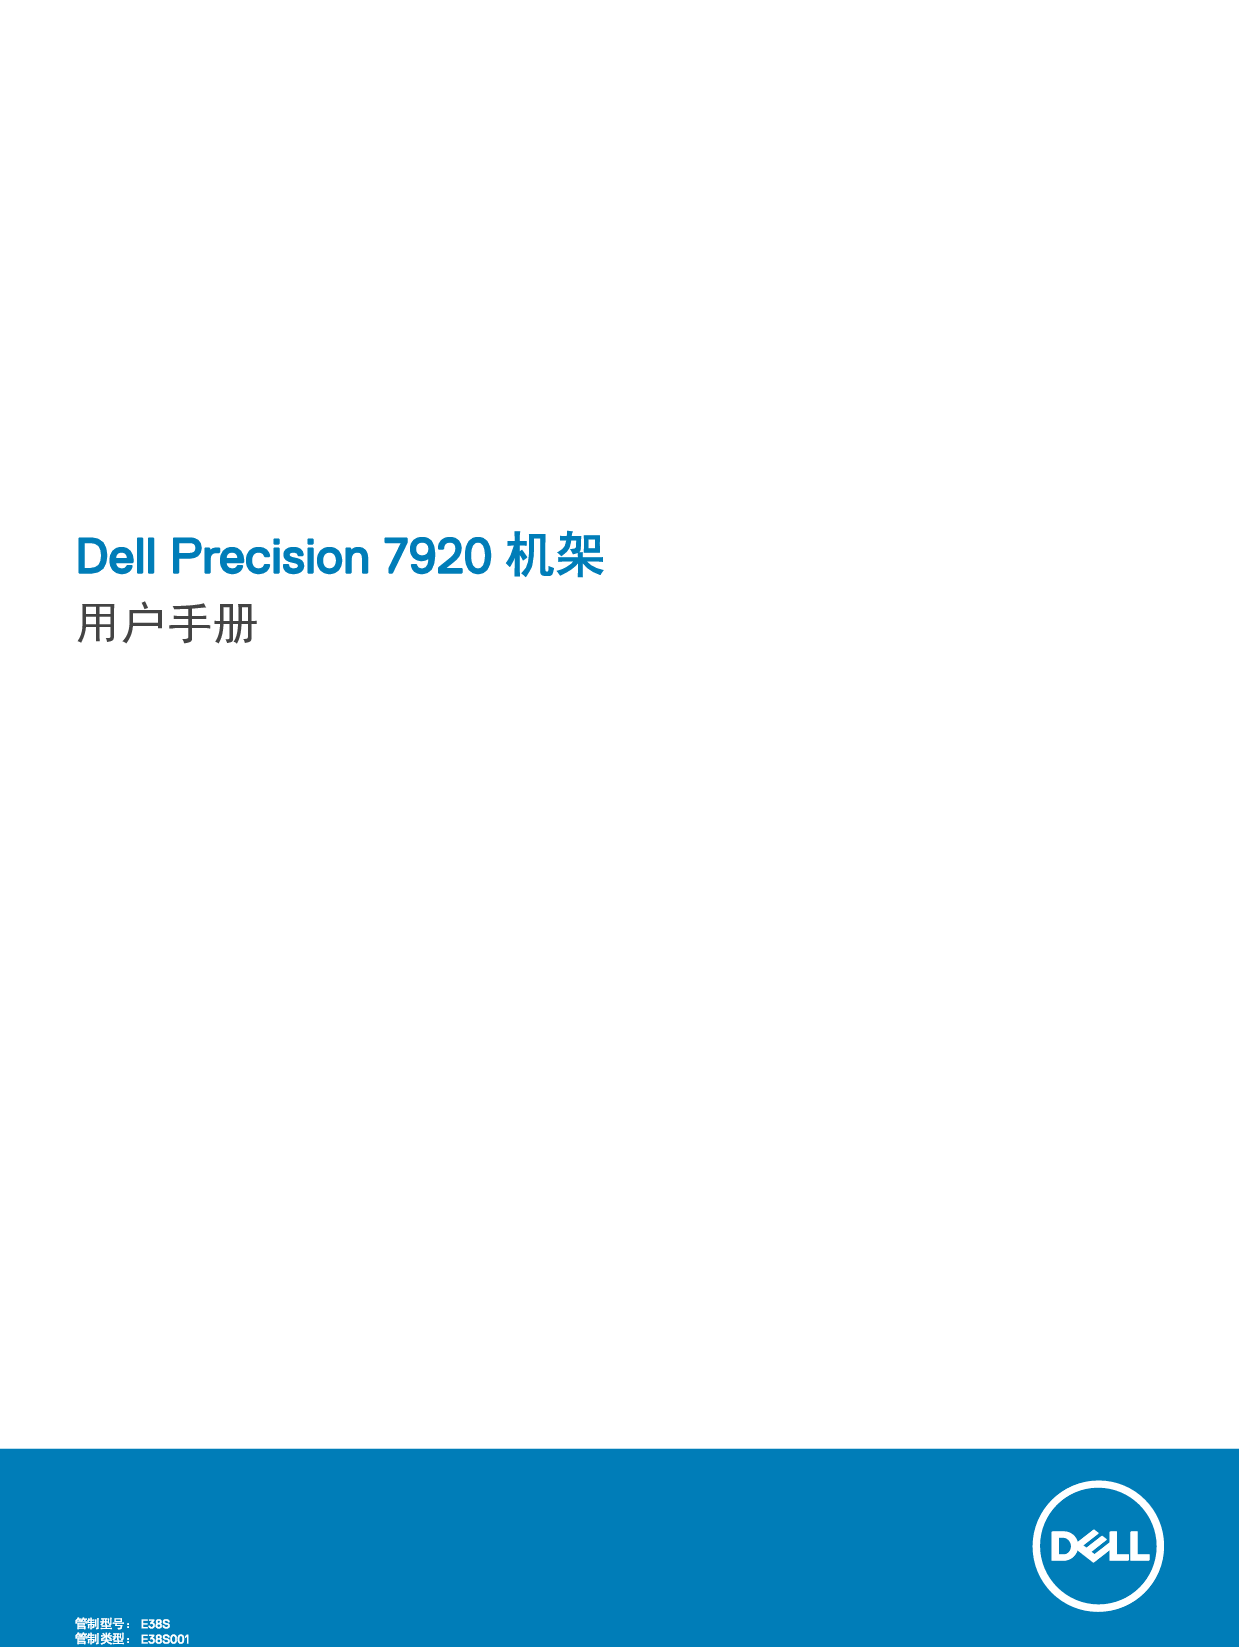 戴尔 Dell Precision 7920R 用户手册 封面